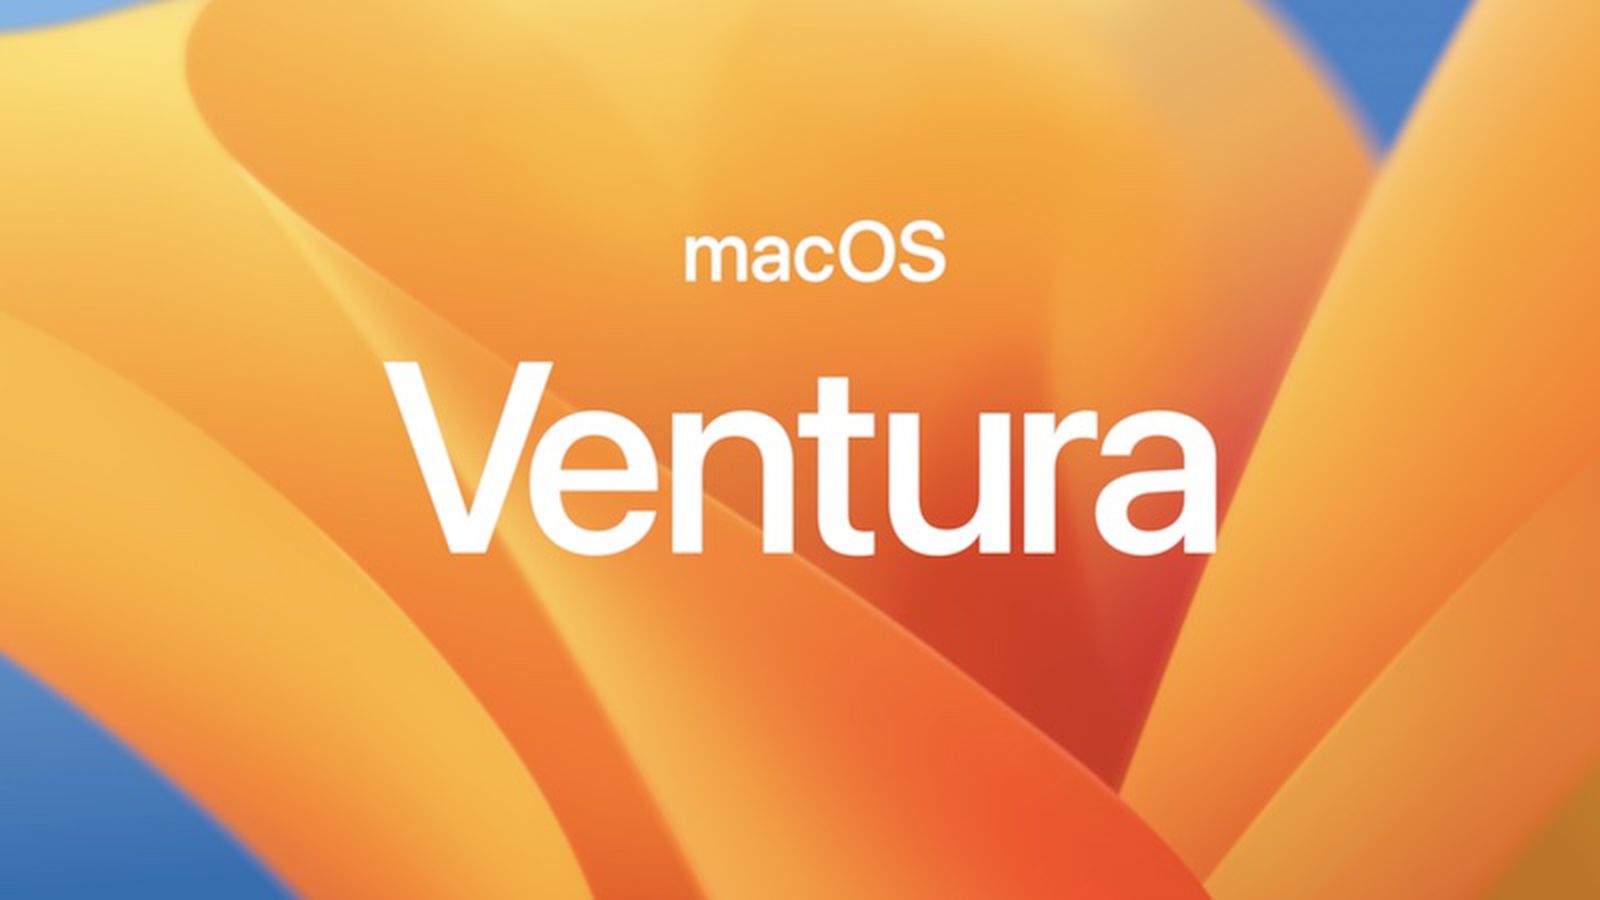 Последняя бета-версия macOS Ventura 13.4 плохо работает с приложениями для фильтрации контента